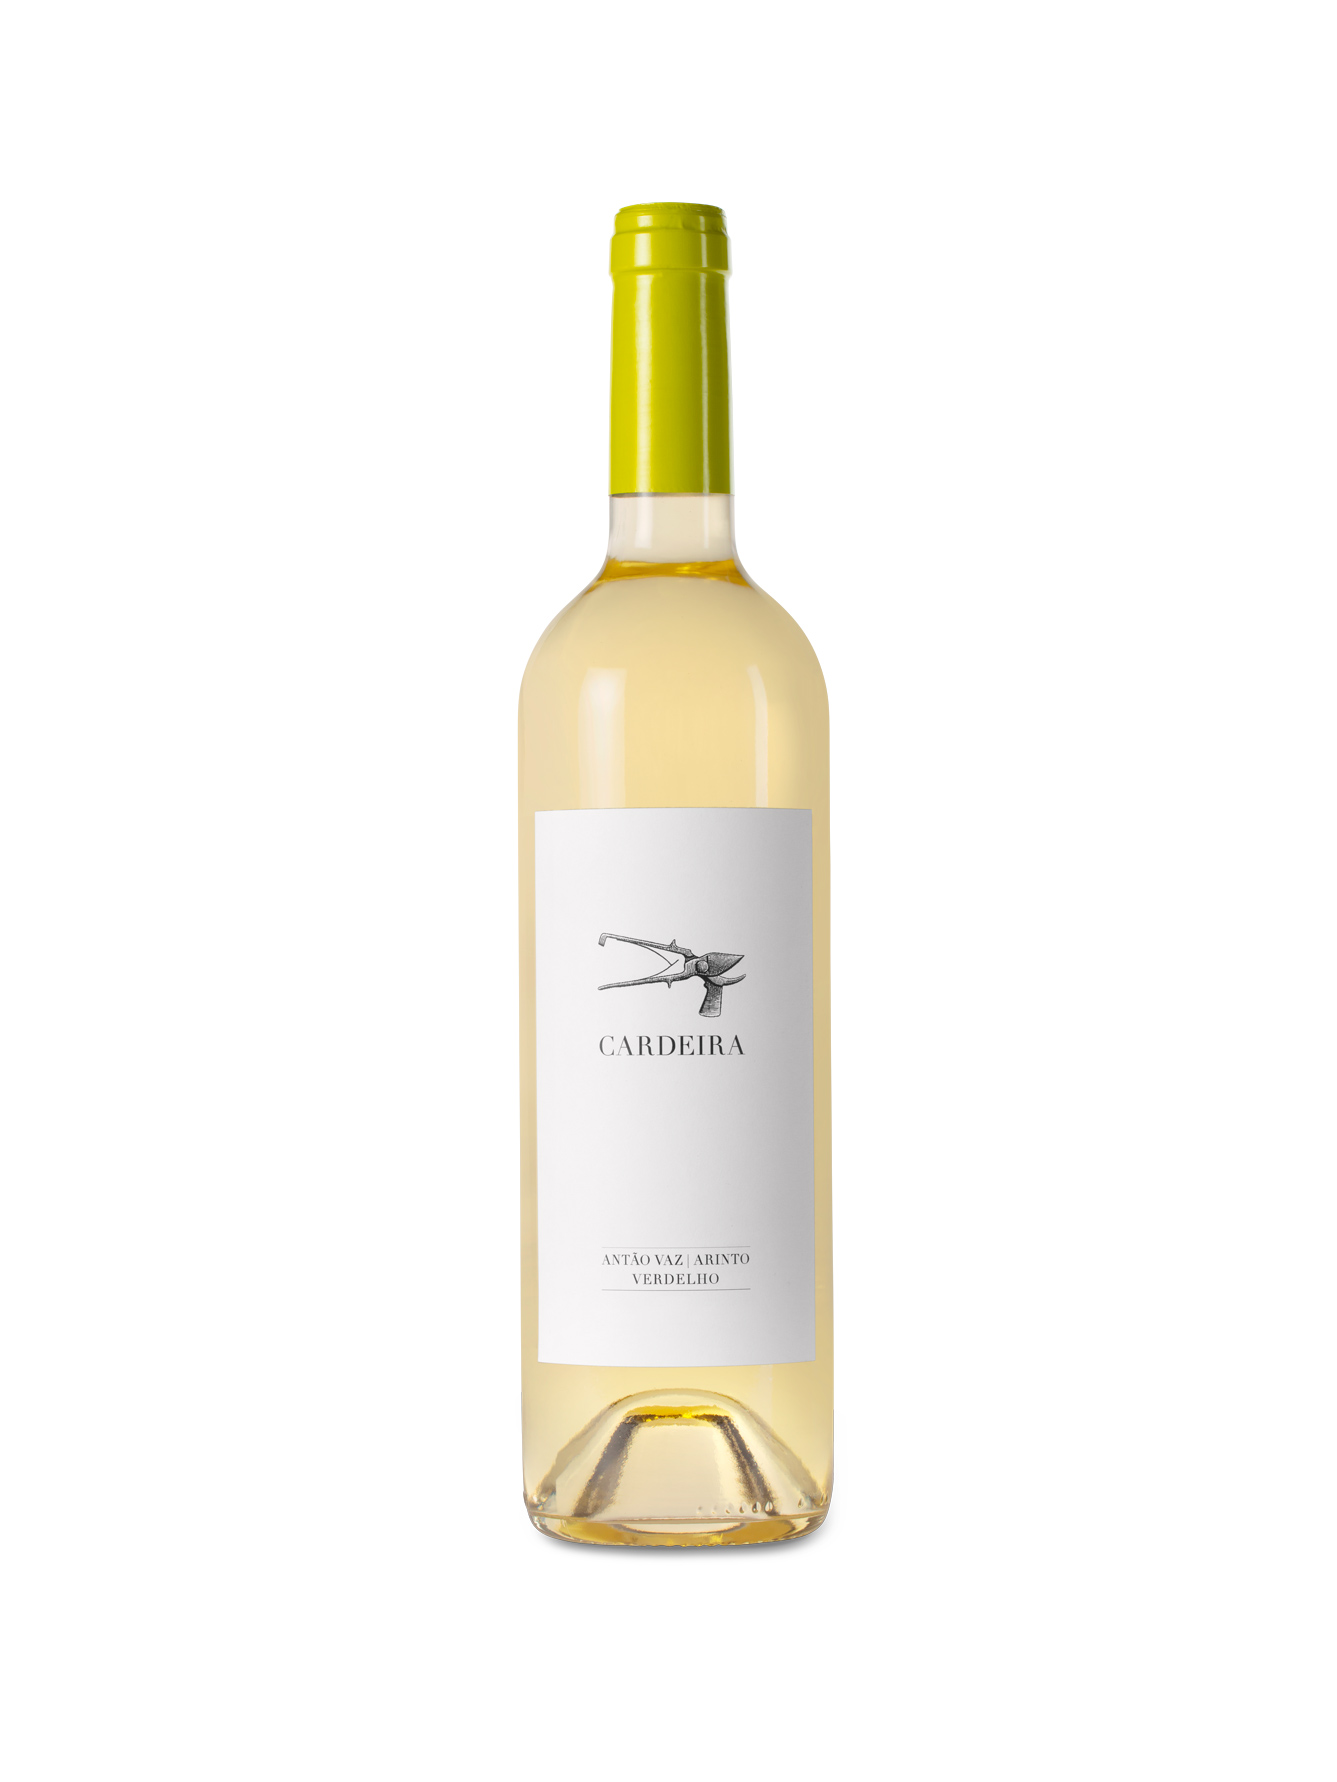 Cardeira branco. Um vinho branco que estimulará os seus sentidos.